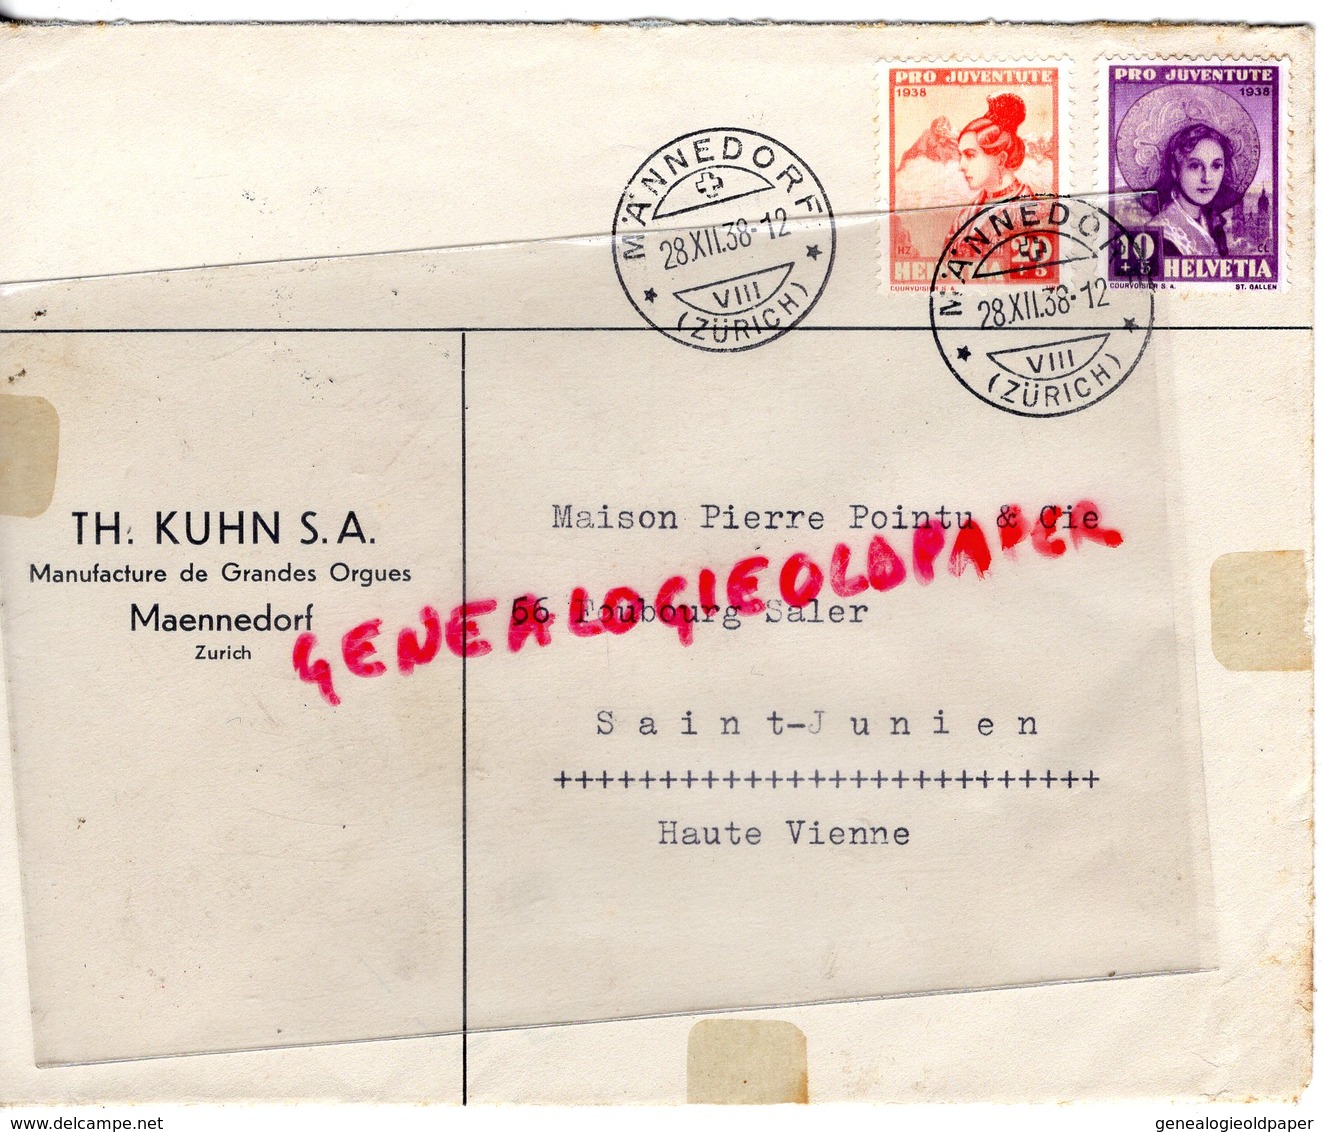 SUISSE - MAENNEDORF- ZURICH-  RARE ENVELOPPE TH. KUHN S.A.MANUFACTURES GRANDES ORGUES-PIERRE POINTU SAINT JUNIEN 87-1938 - Switzerland